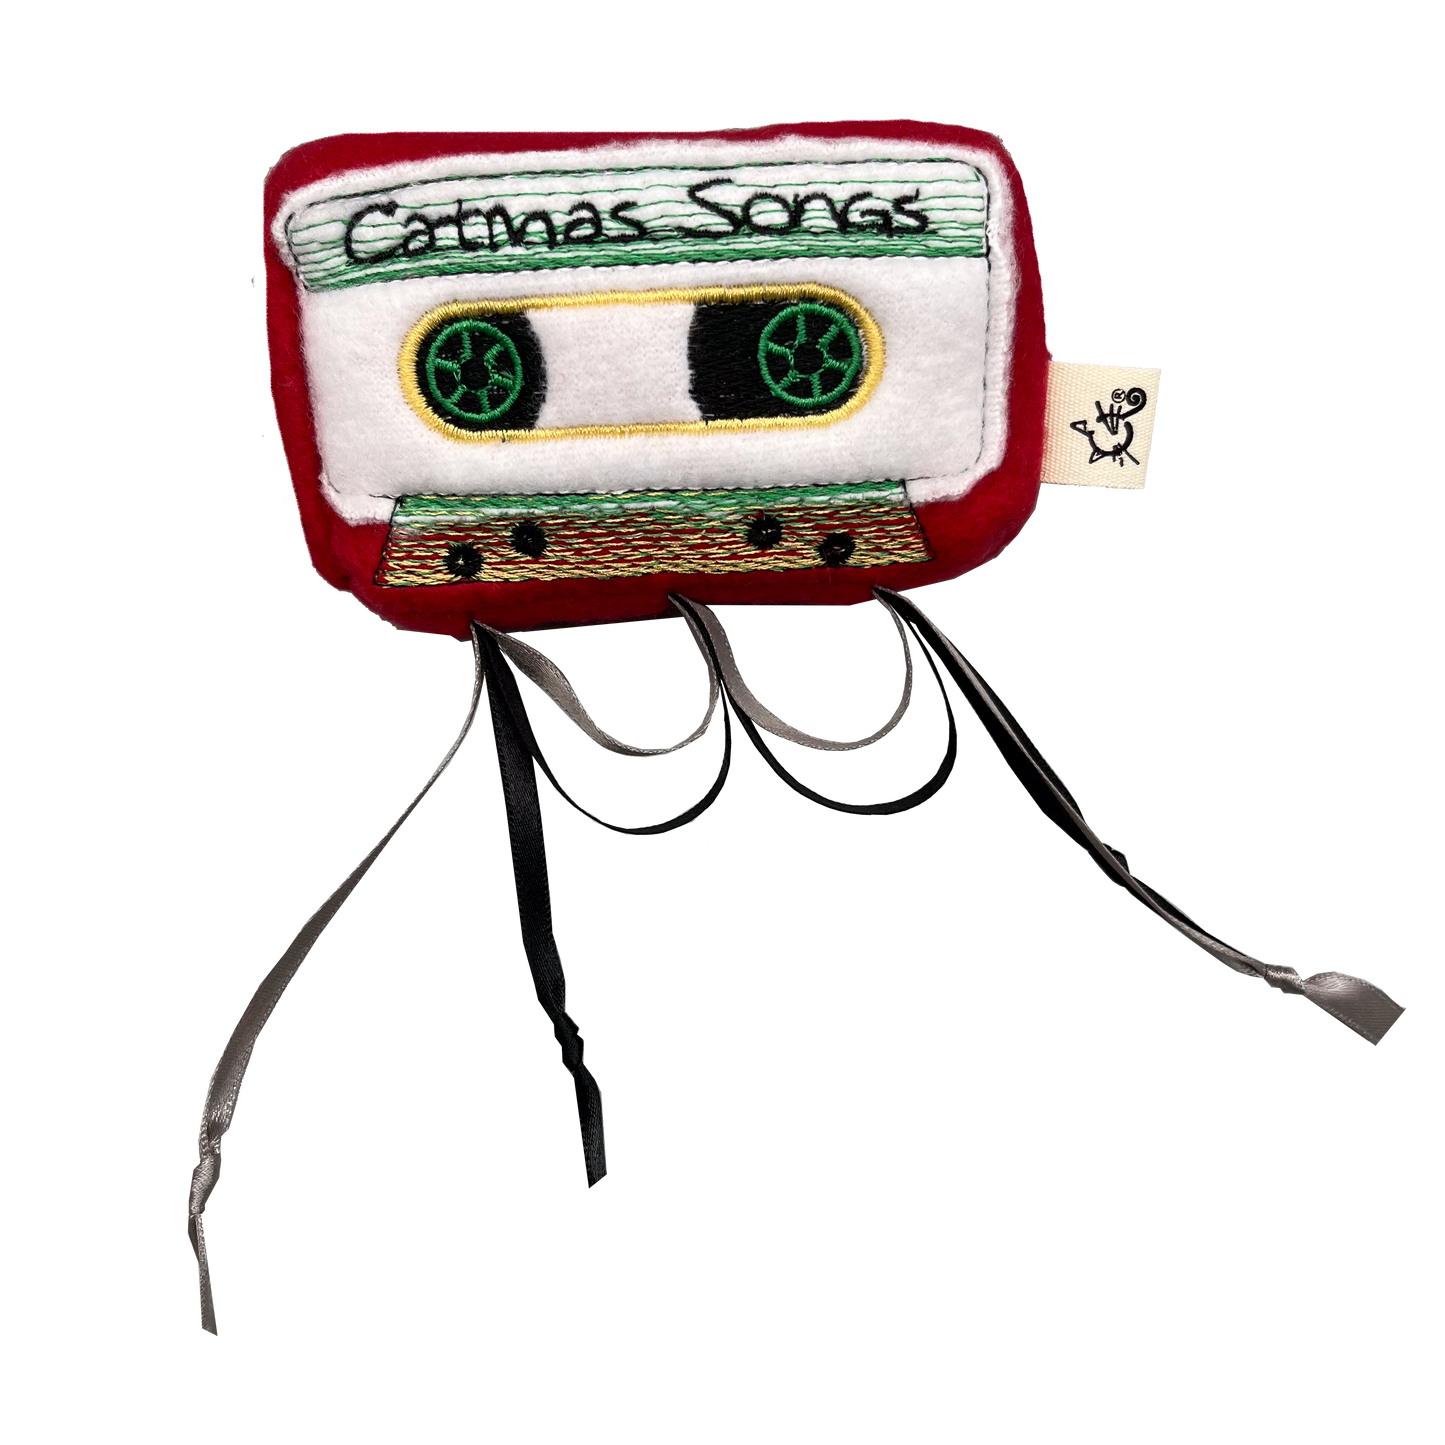 SALE CATmas Songs Eaten Cassette Tape Cat Toy